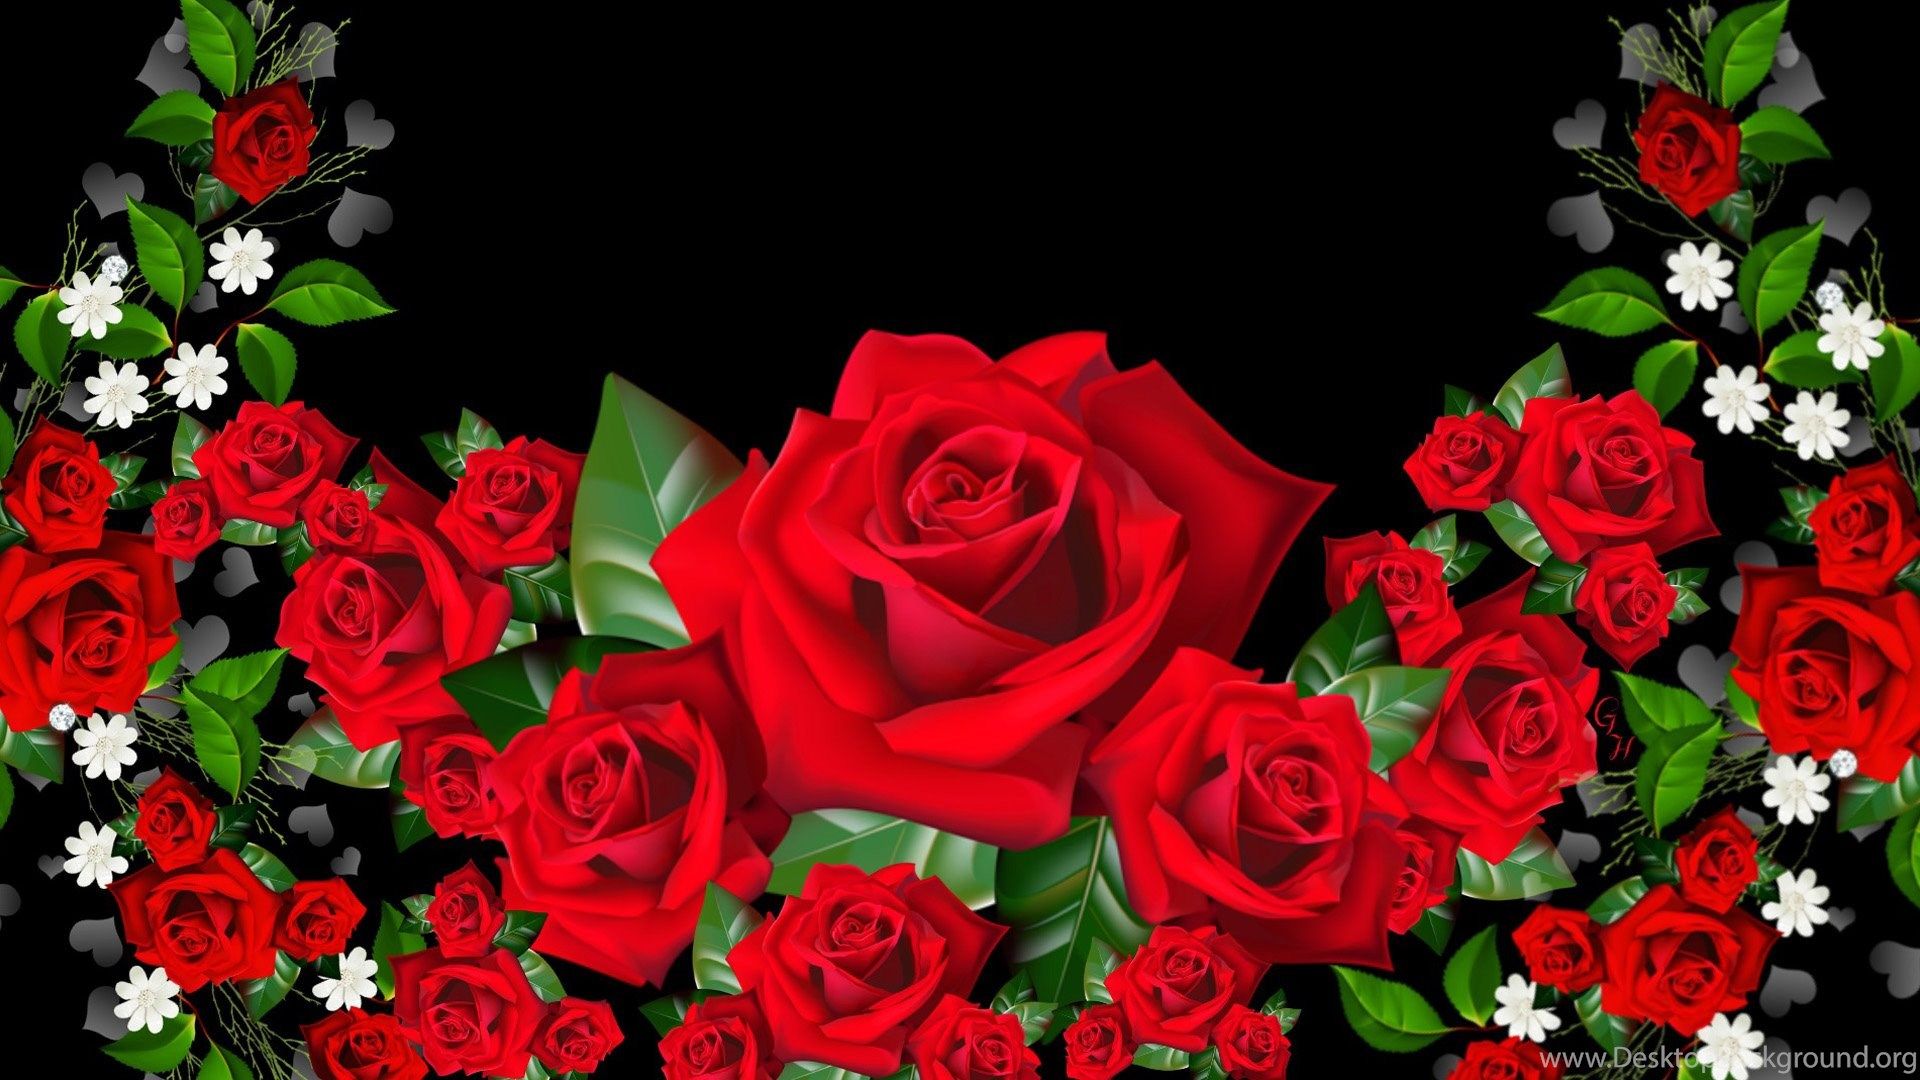 3D Rose Wallpaper Rose Flower Image, Rose Picture